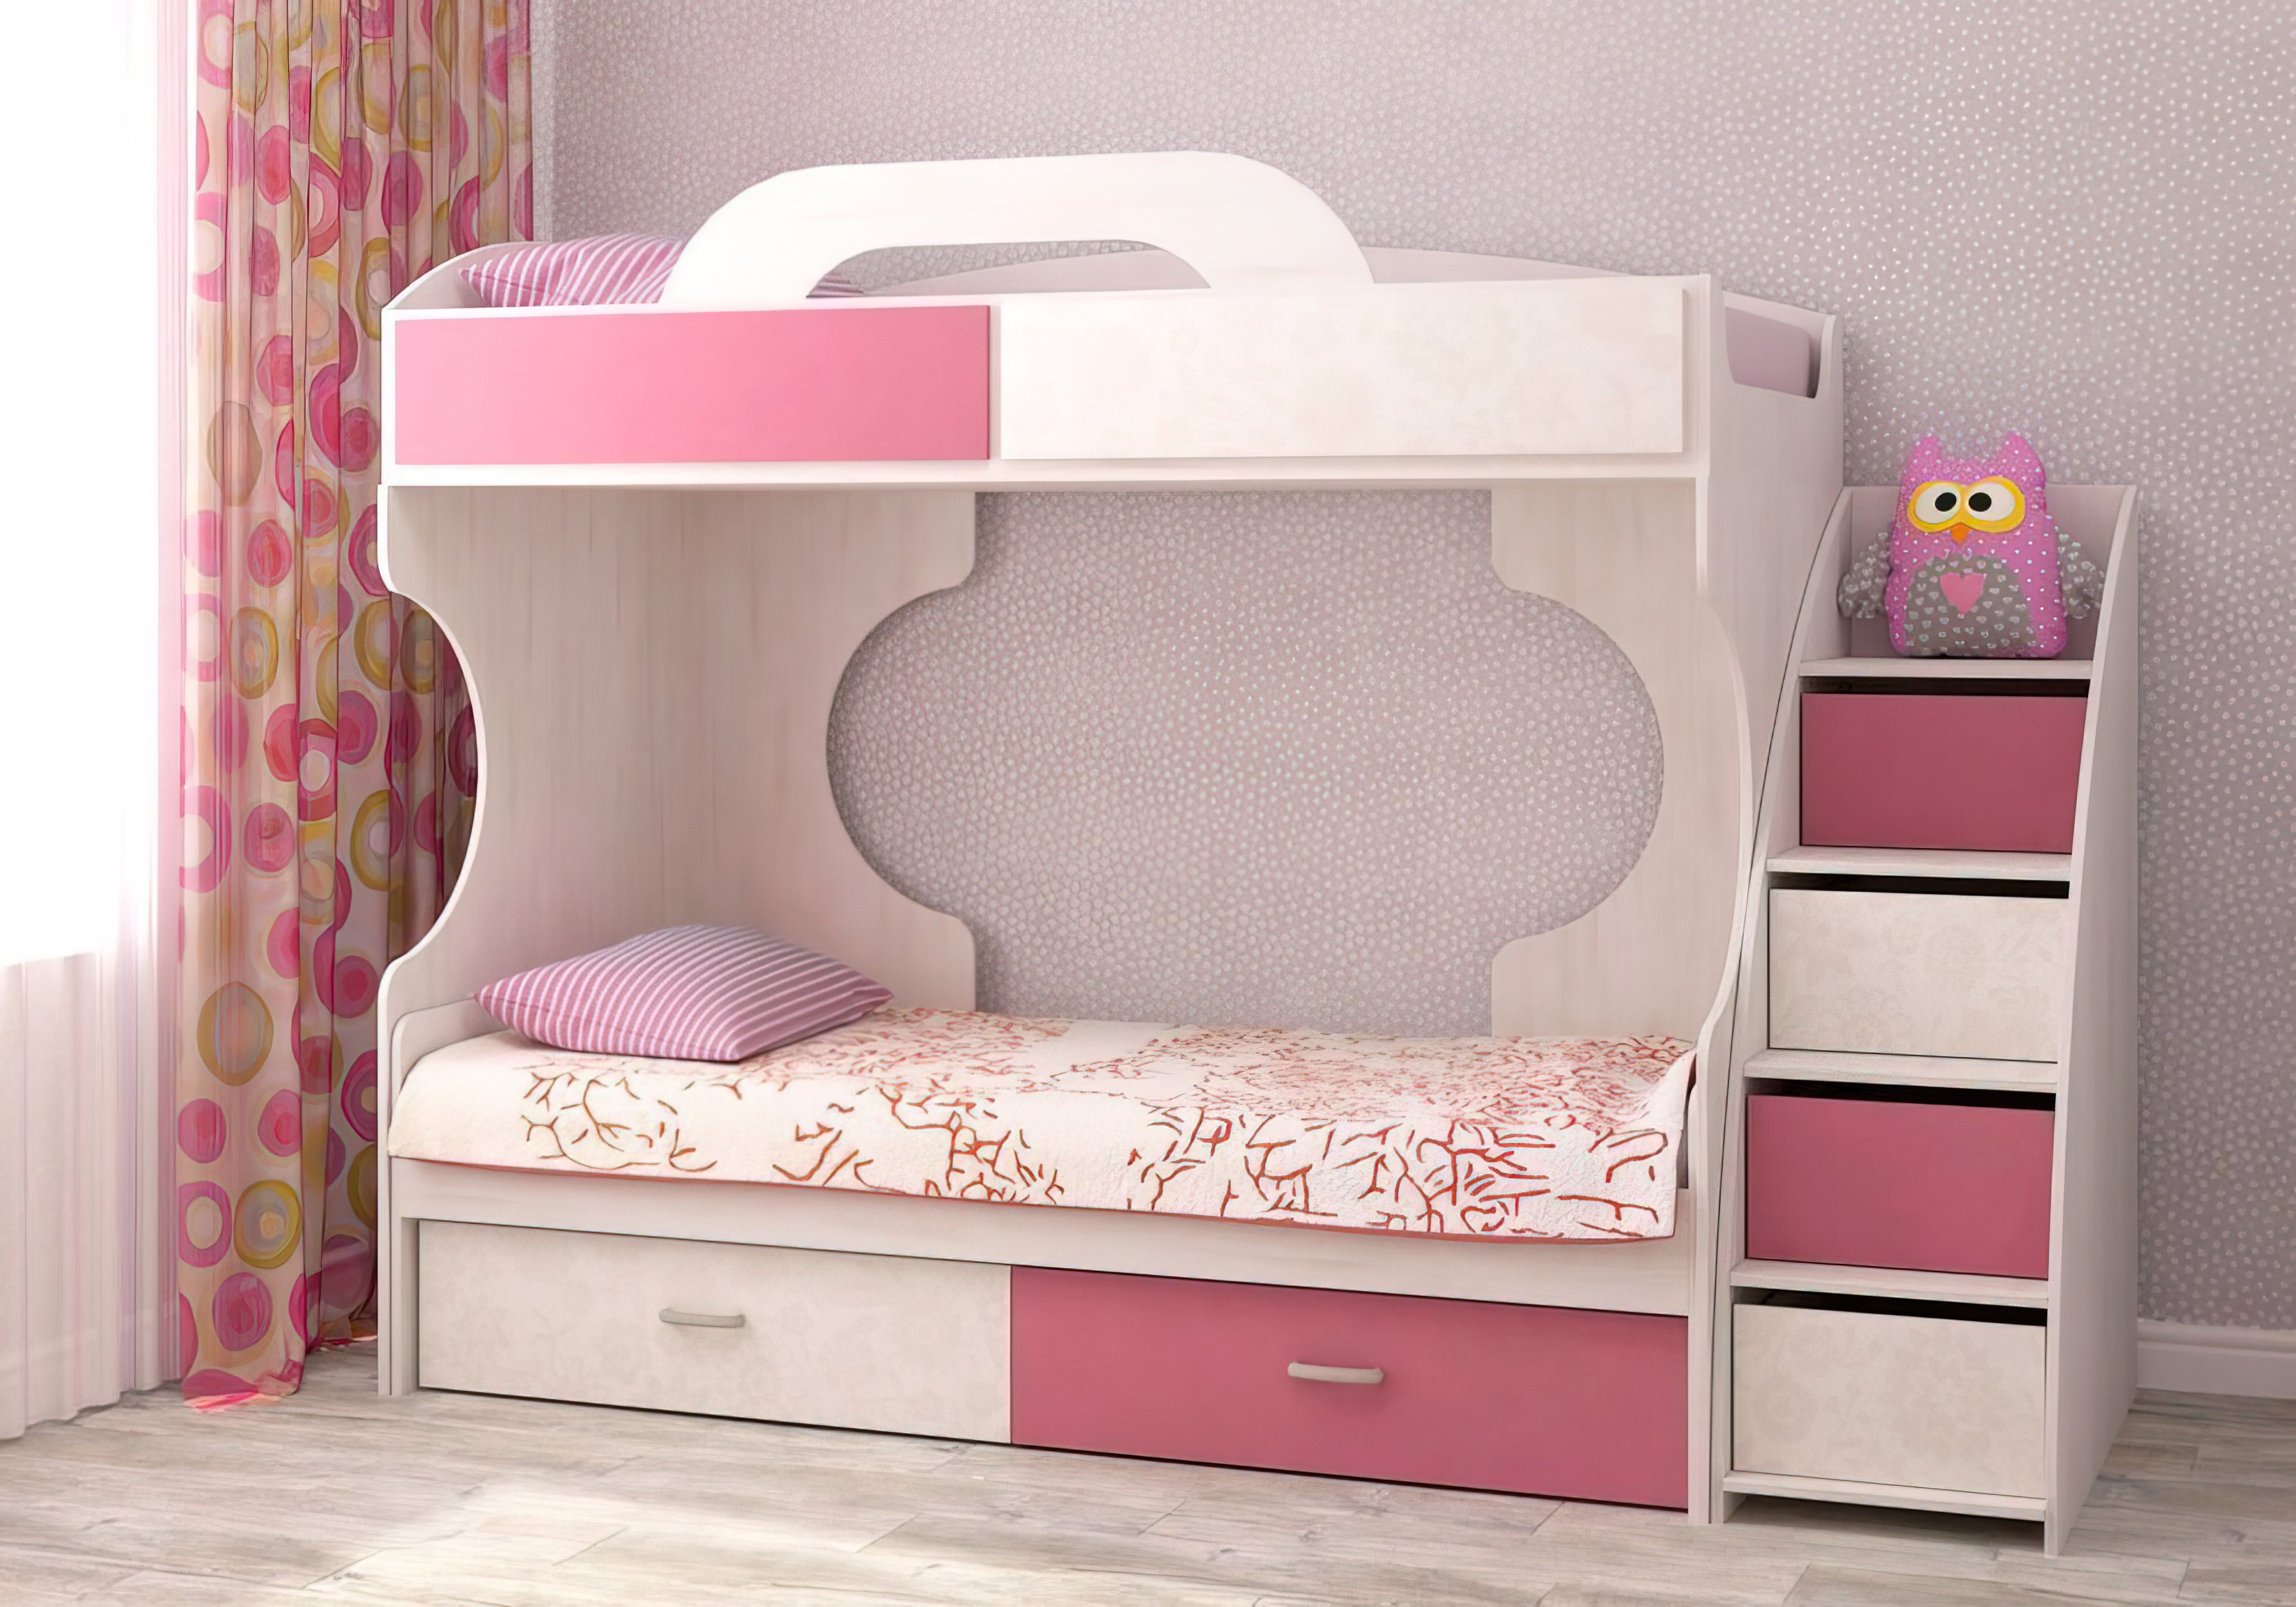  Купить Детские кровати Детская кровать "Dori Rose" Аззаре